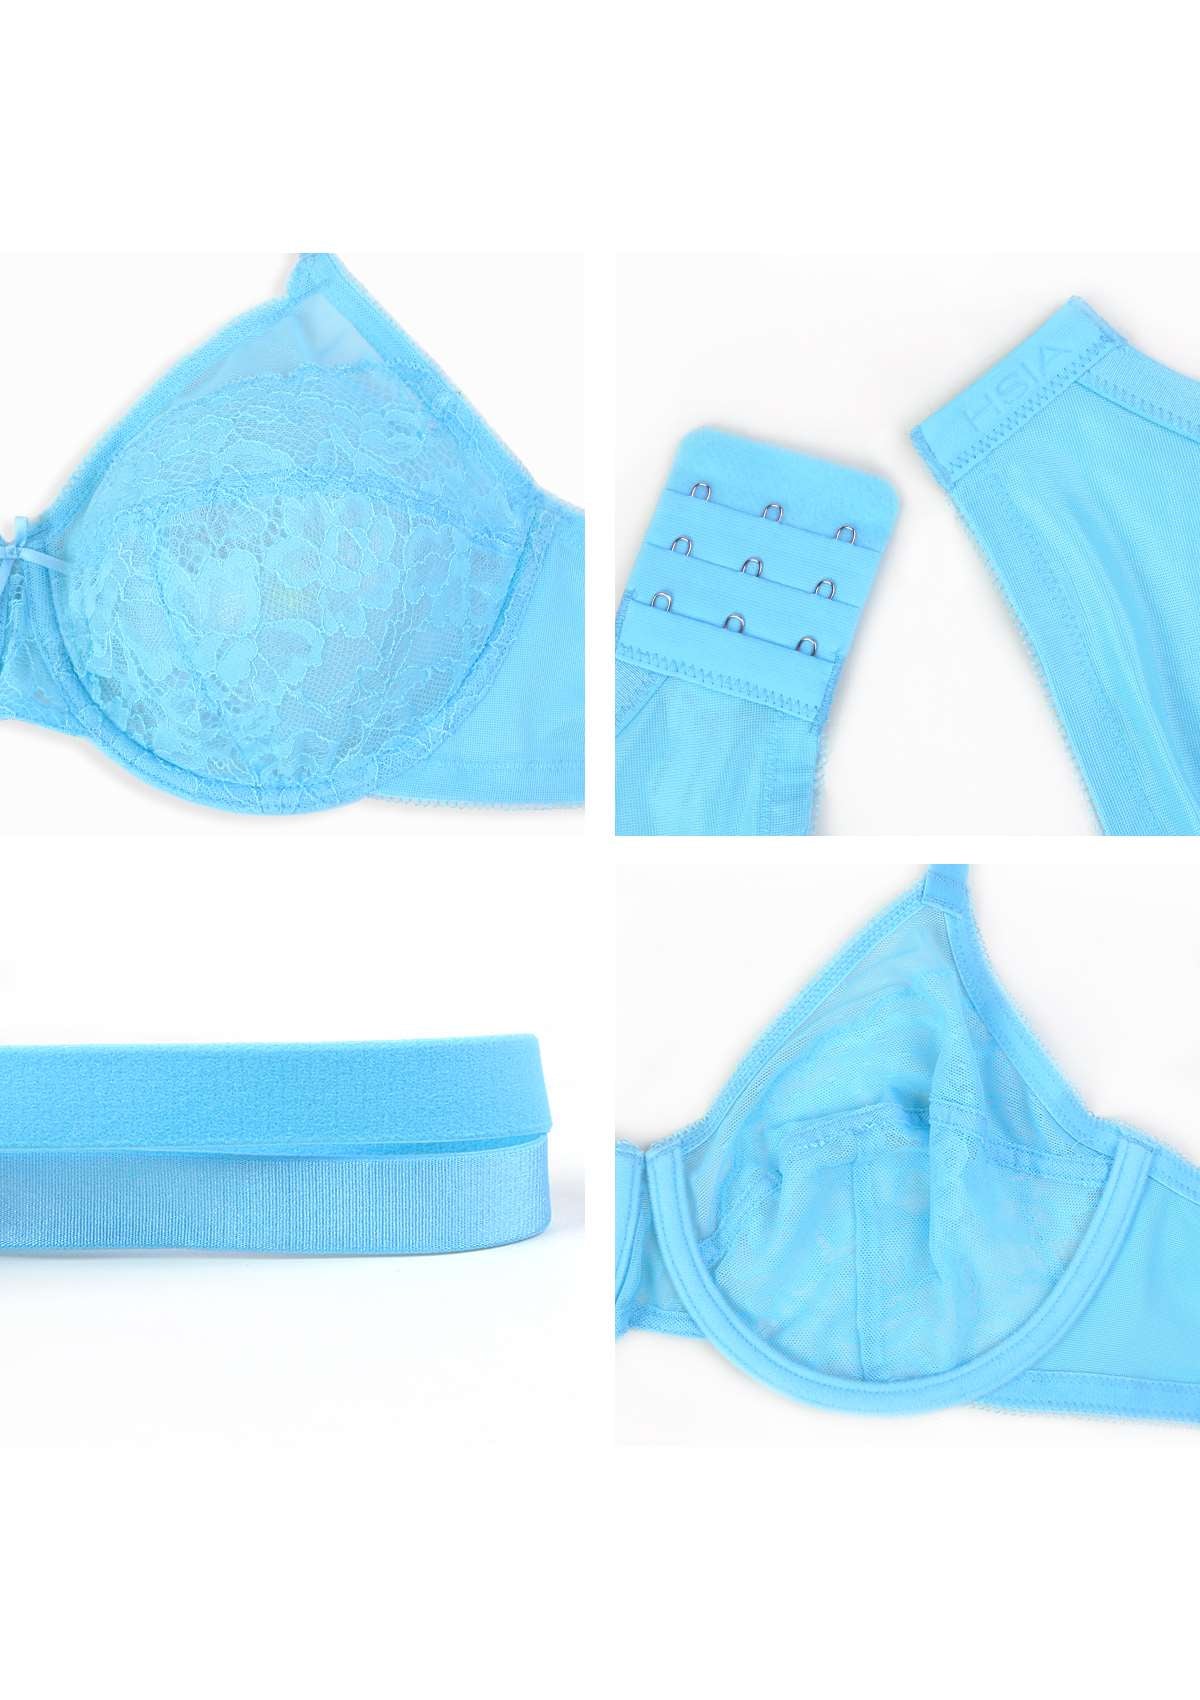 HSIA Enchante Minimizer Lace Bra: Full Support For Heavy Breasts - Capri Blue / 40 / DD/E